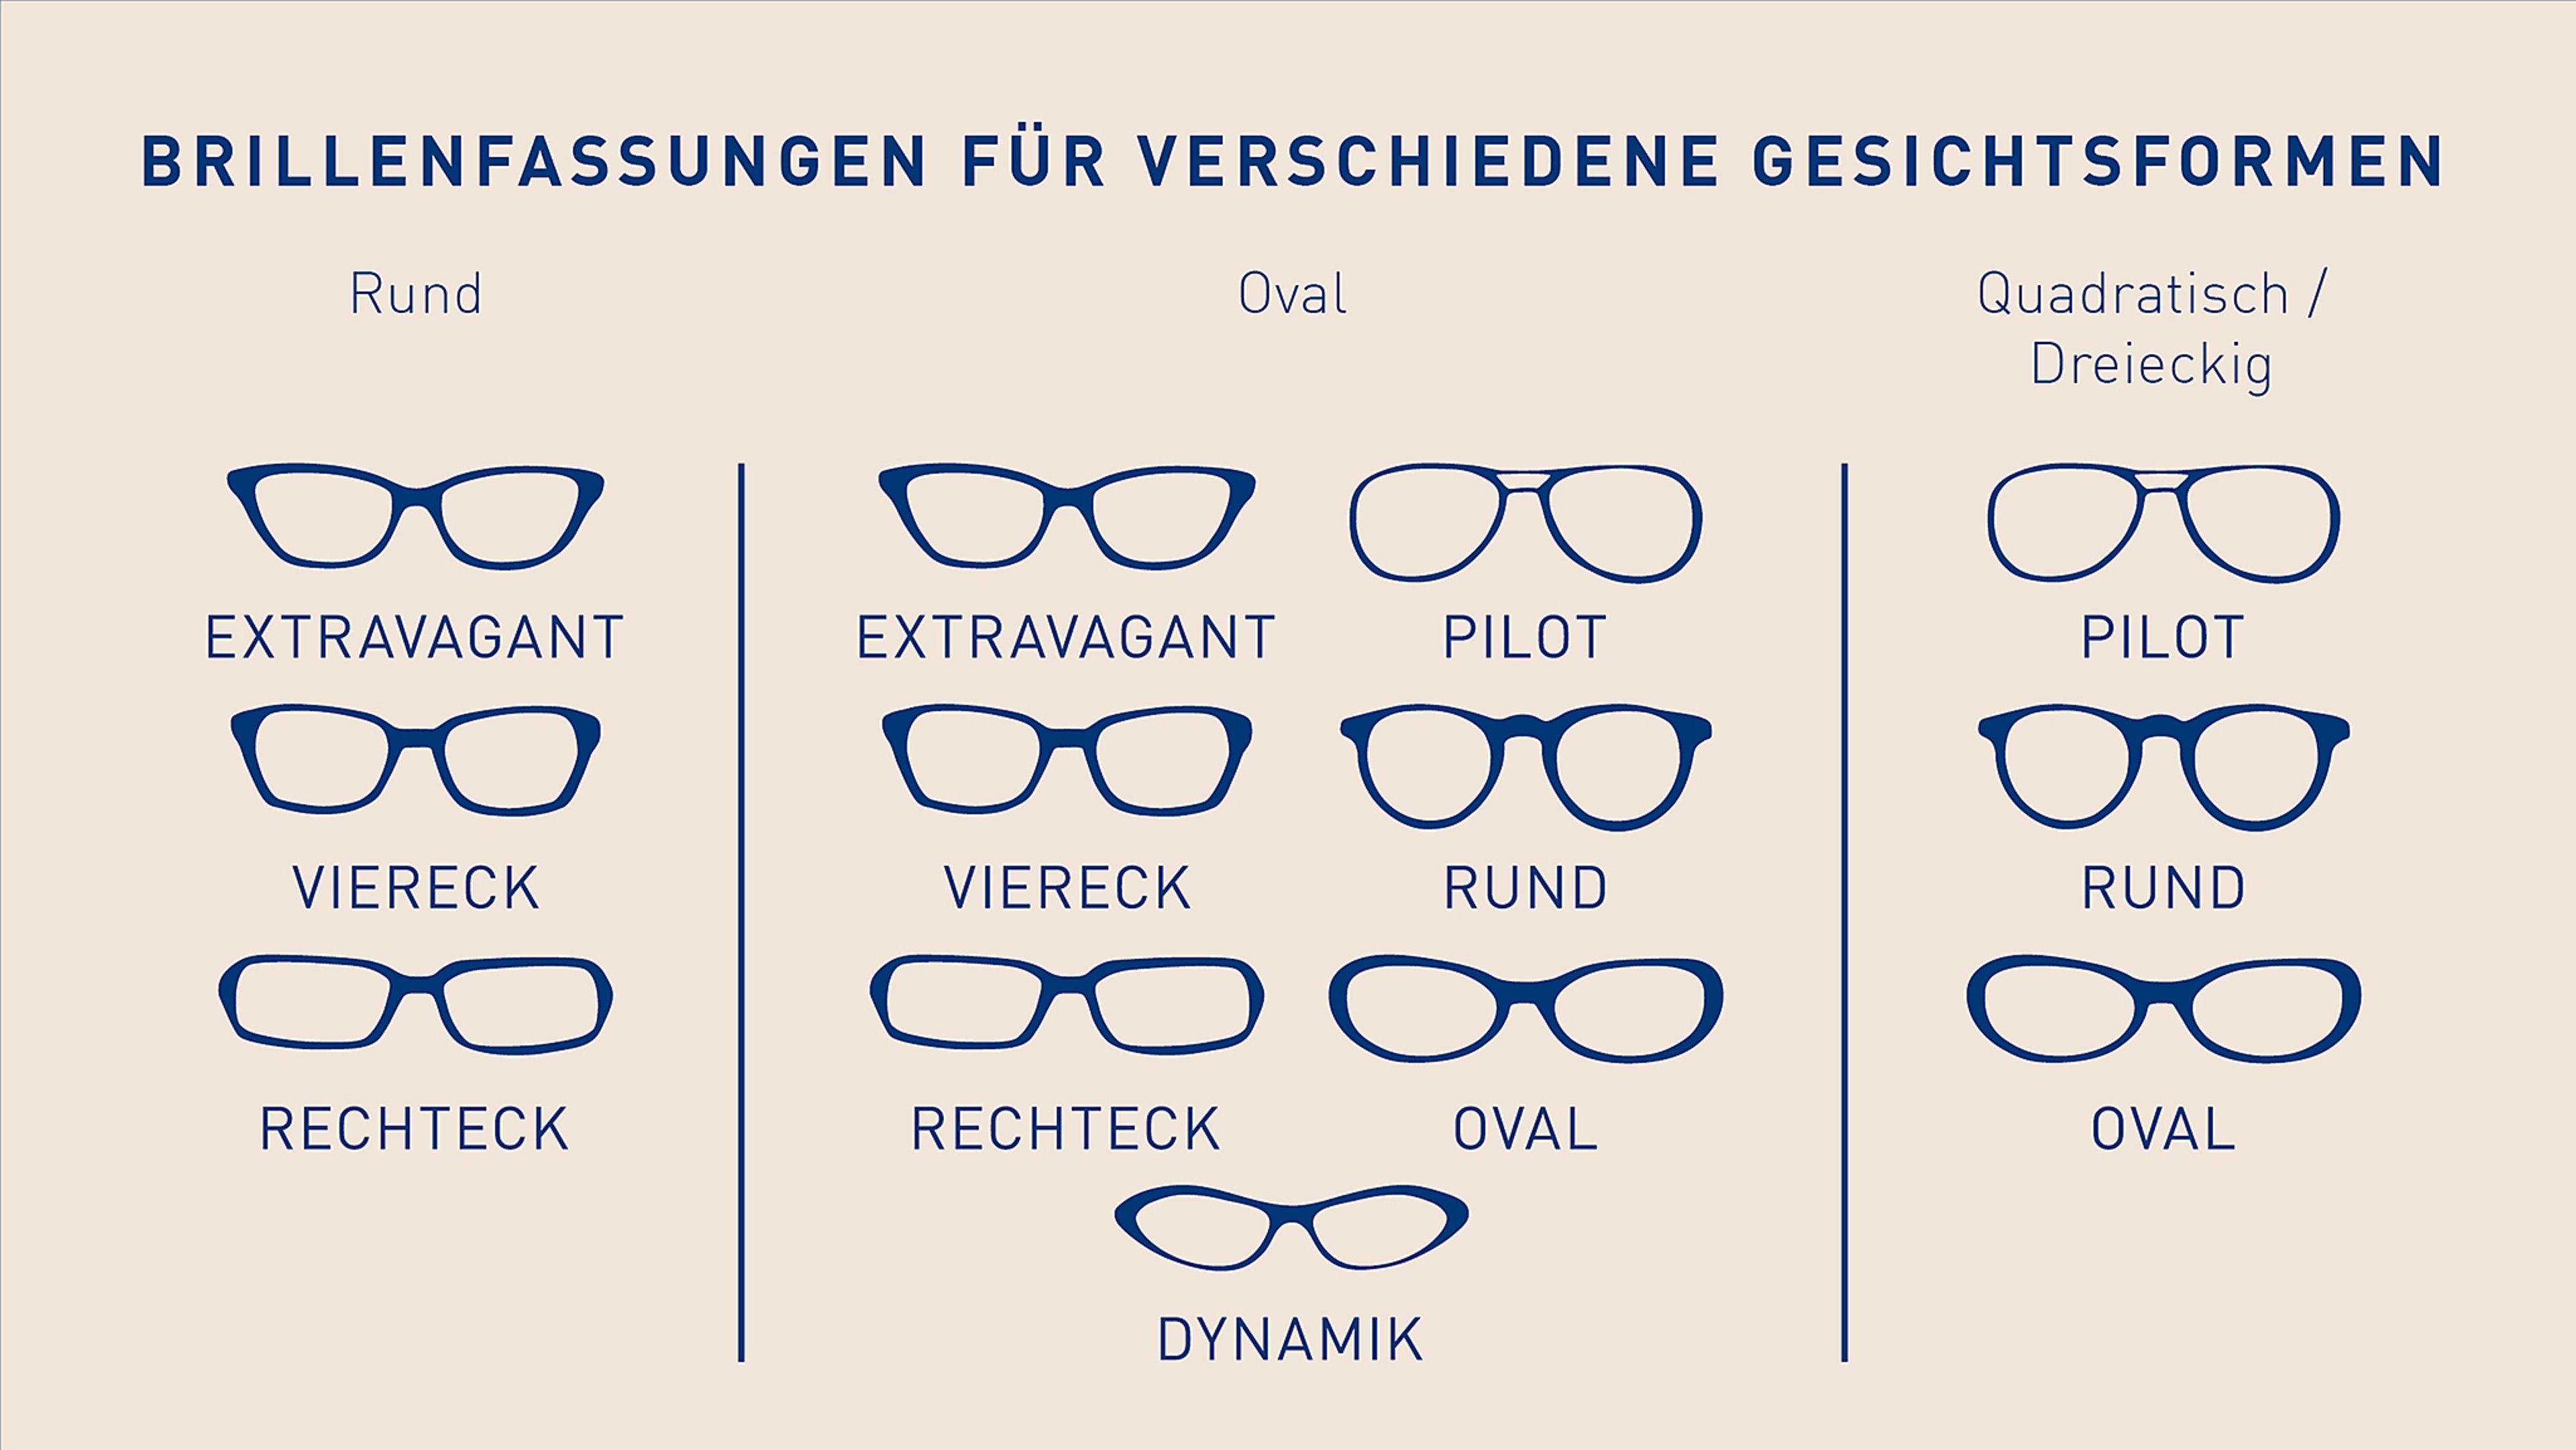 gesichtsformen-brillenfassungen_grafik_02-2020_16x9